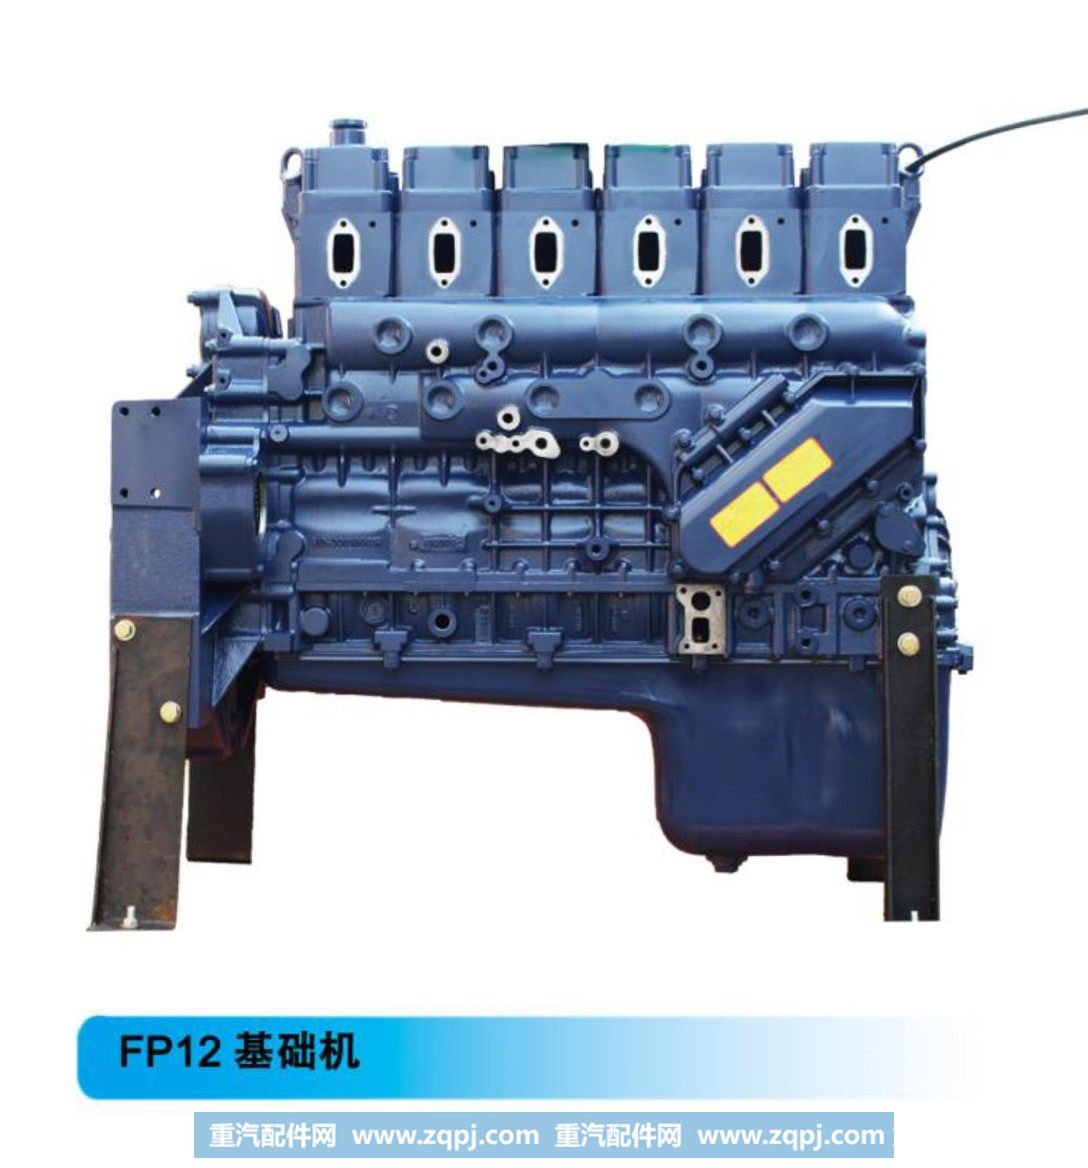 潍柴系列柴油发动机--FP12基础机【法泽尔发动机】/